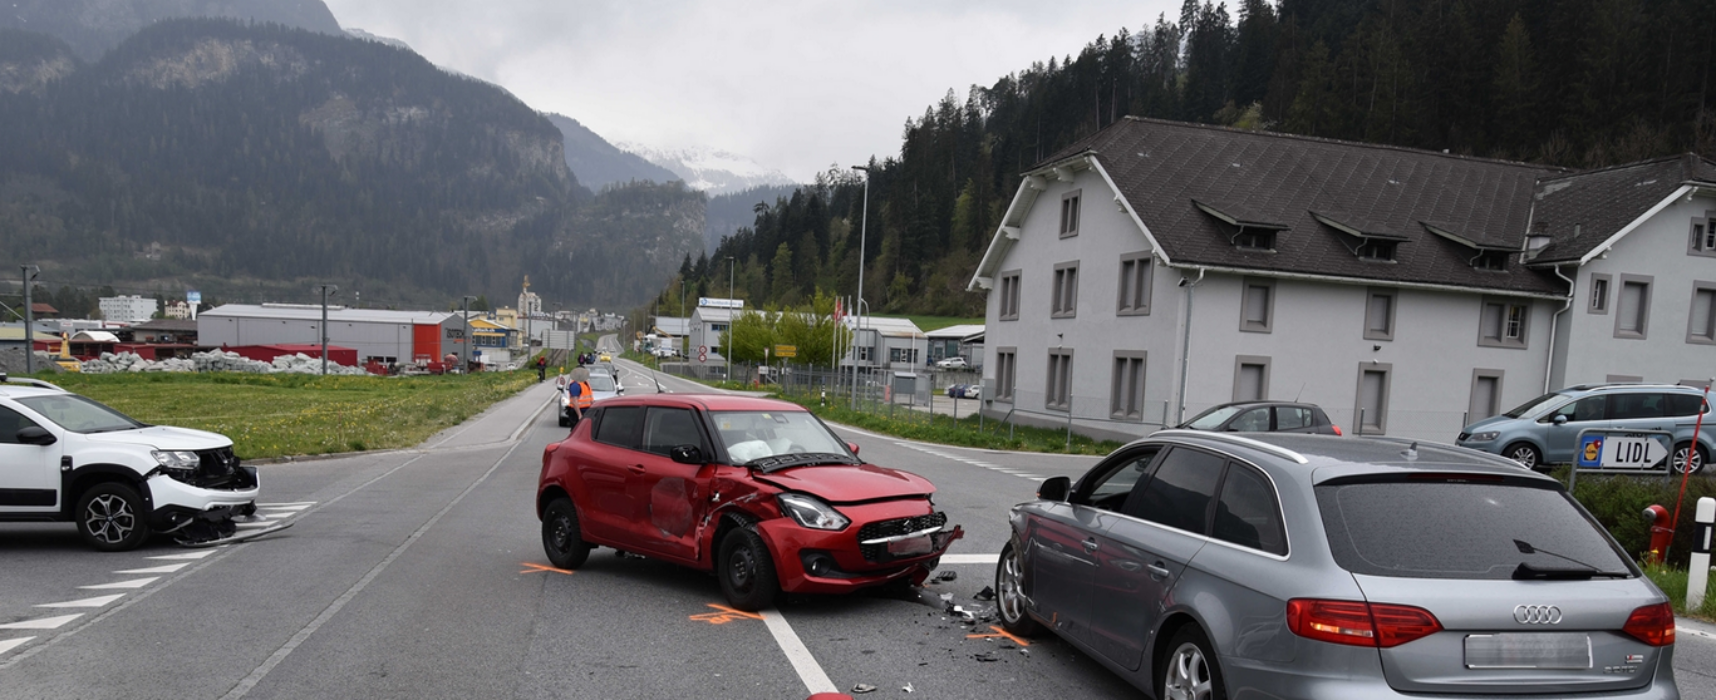 Thusis: Hoher Sachschaden bei Verkehrsunfall